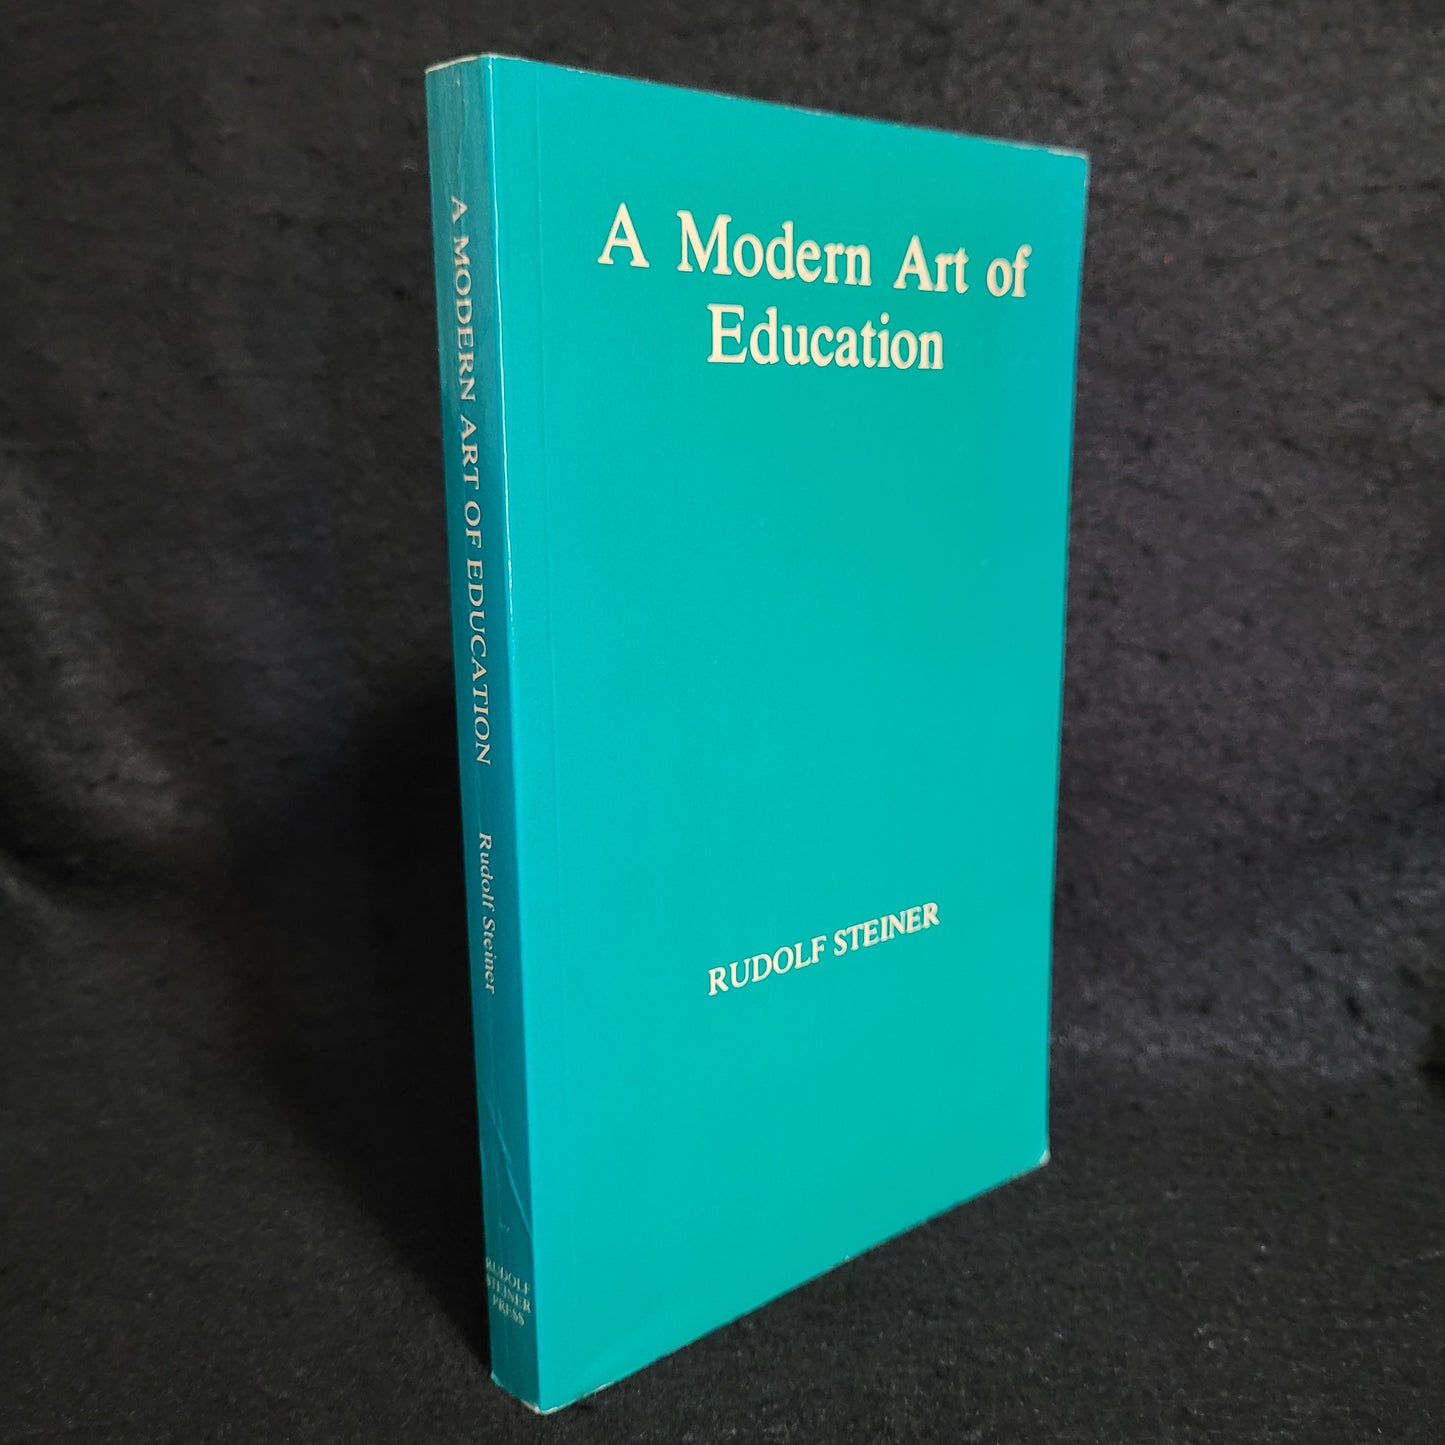 A Modern Art of Education by Rudolf Steiner (Rudolf Steiner Press, 1981) Paperback